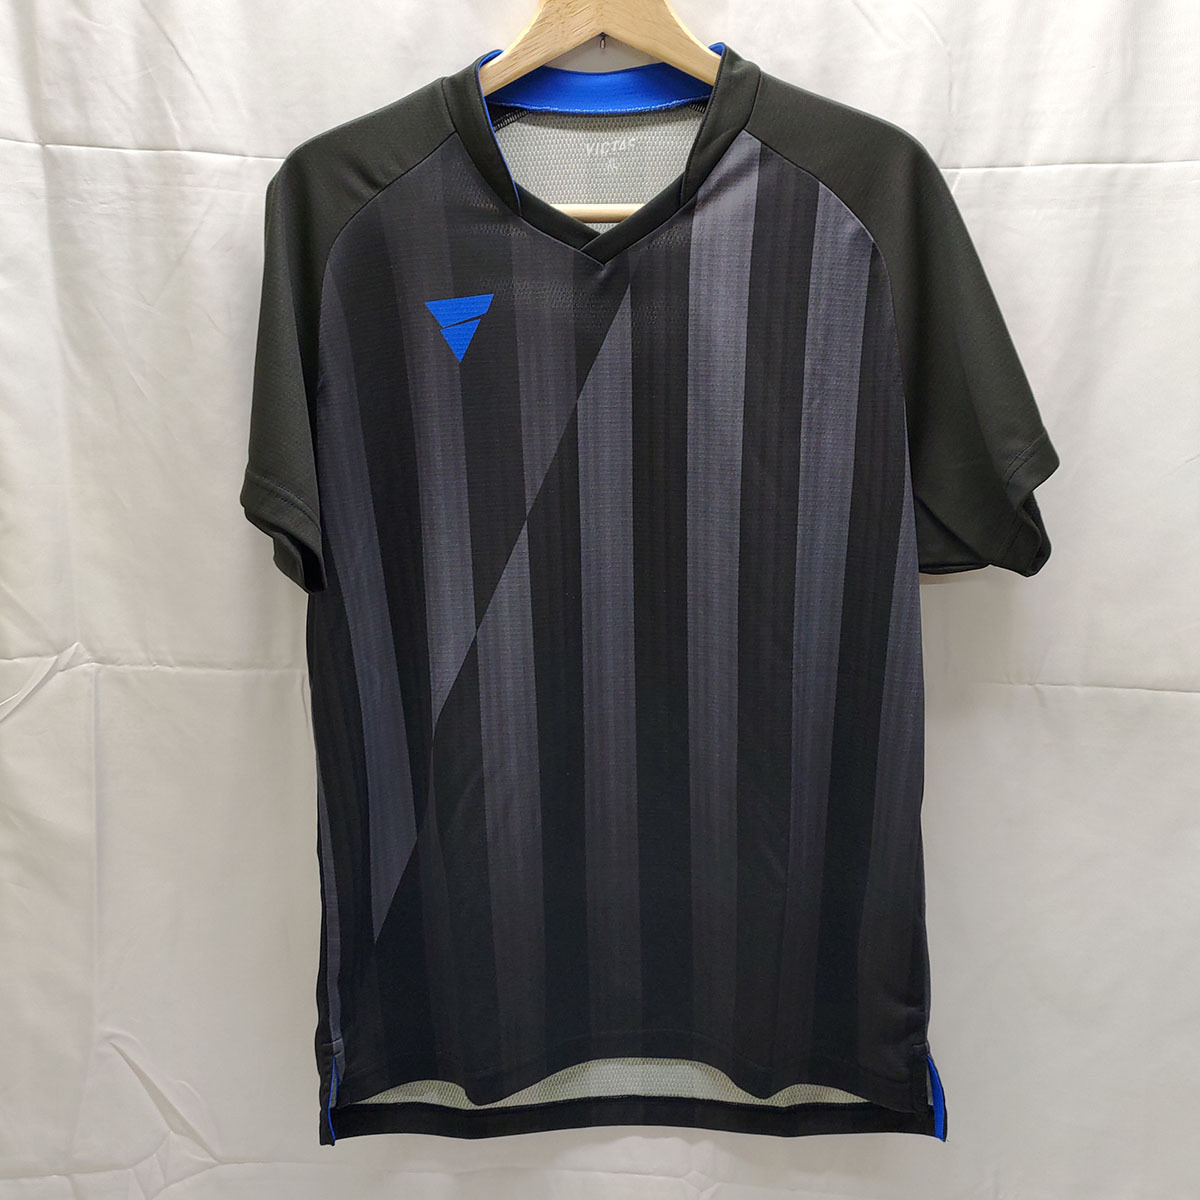 VICTAS 卓球 ウェア ユニフォーム ゲームシャツ JTTA プラシャツ 半袖 ブラック XLサイズ ユニ 31467 ヴィクタス